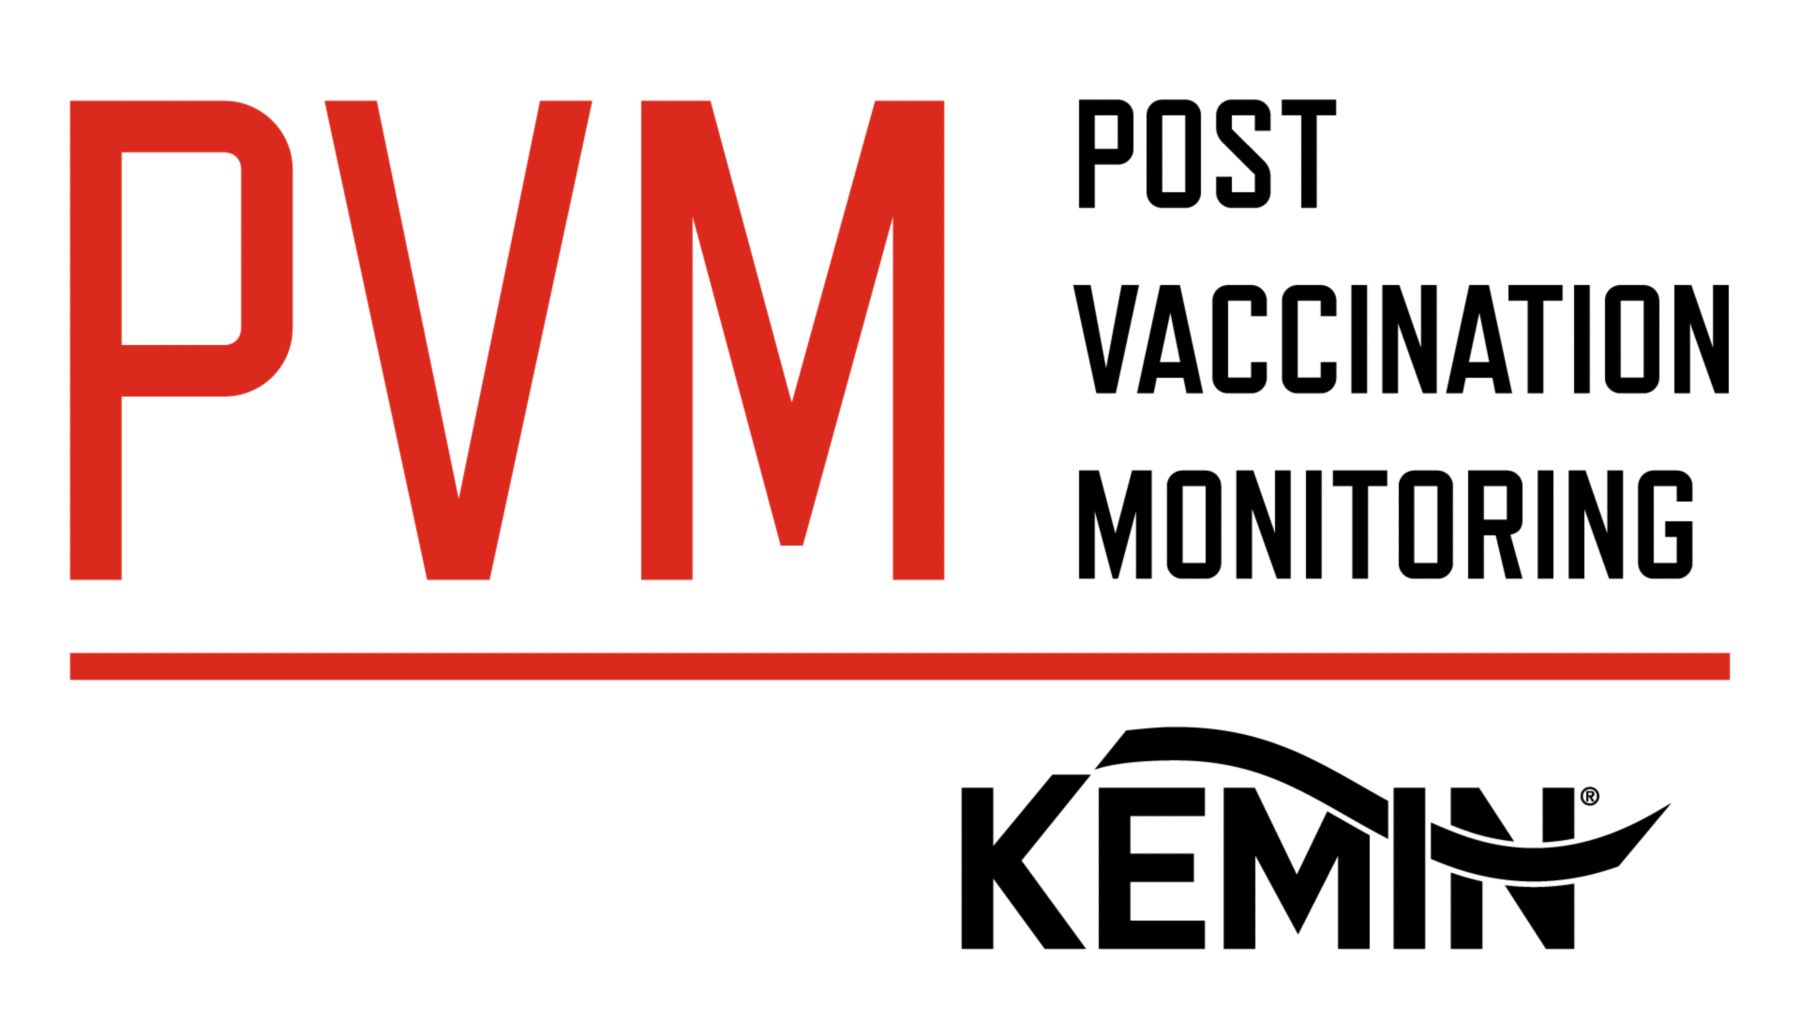 Post Vaccination Monitoring